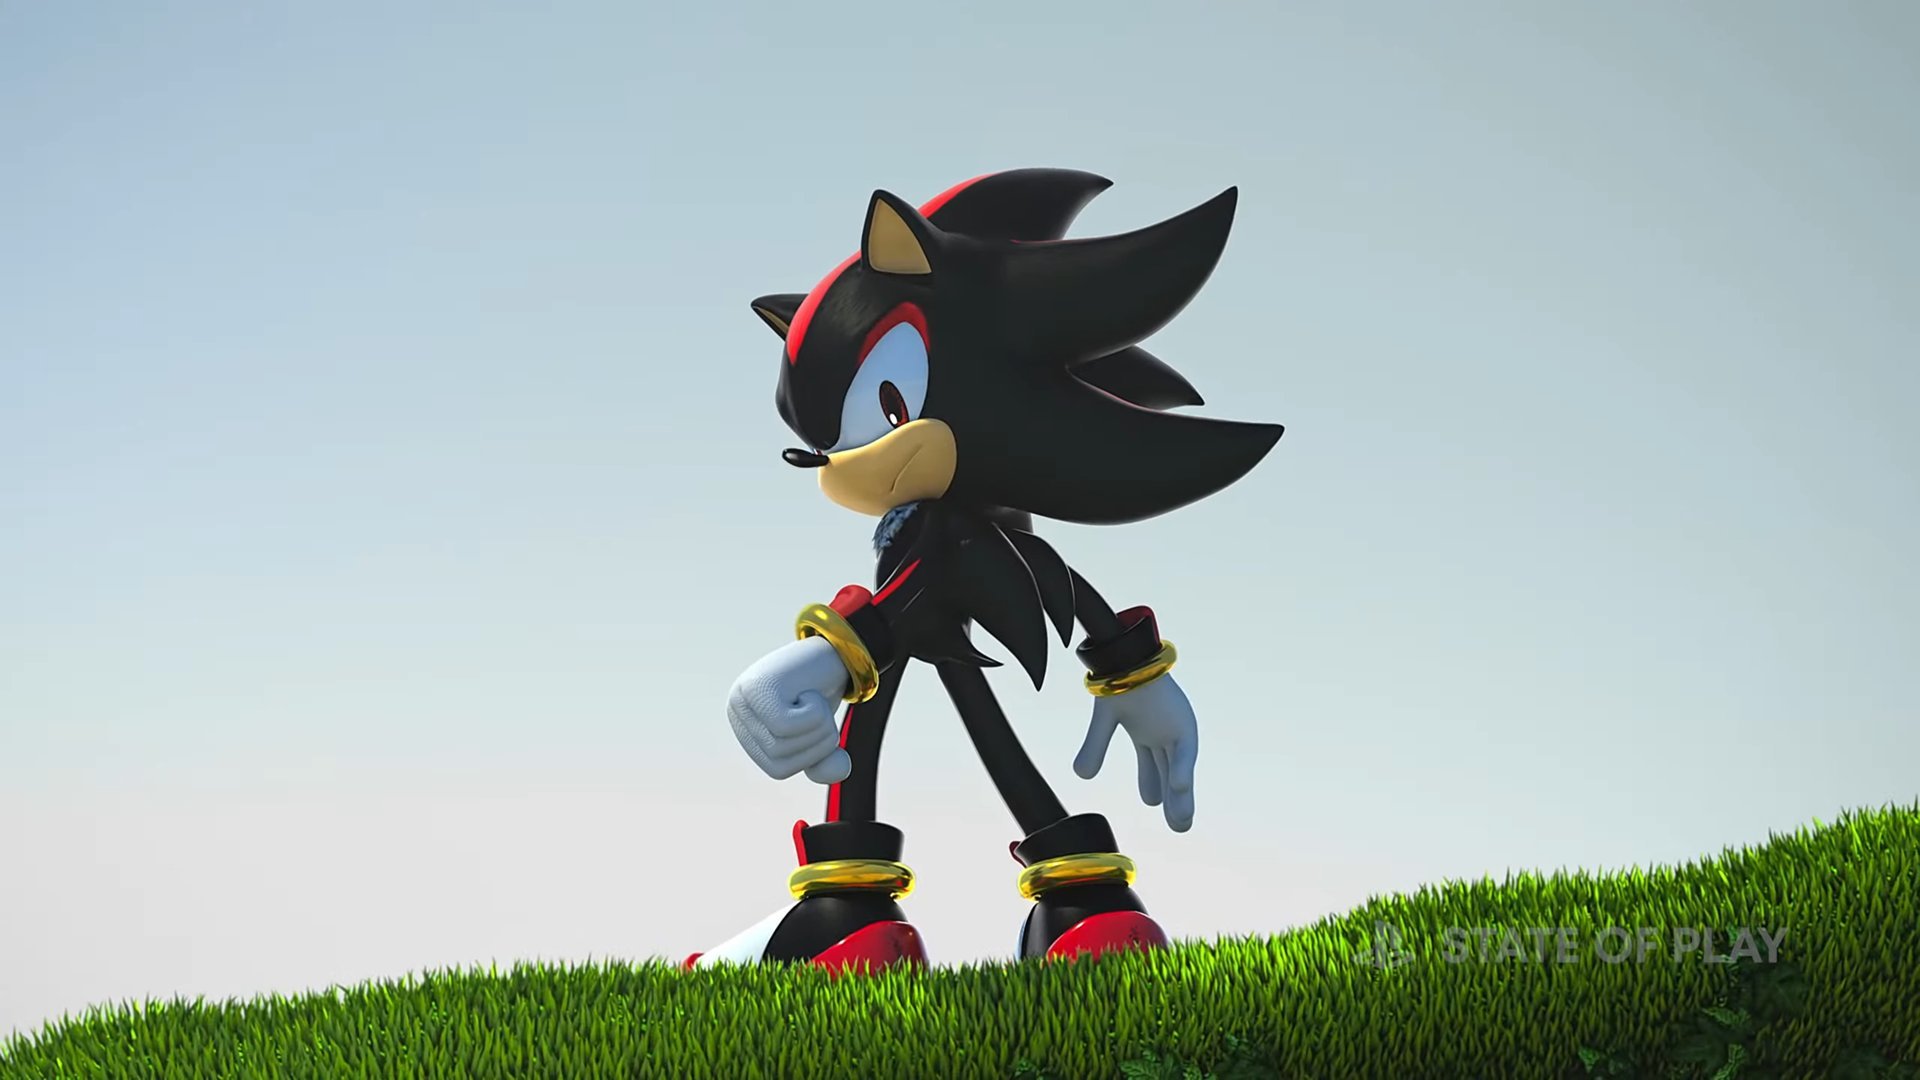 El juego de Shadow The Hedgehog con Sonic asoma la patita en Corea